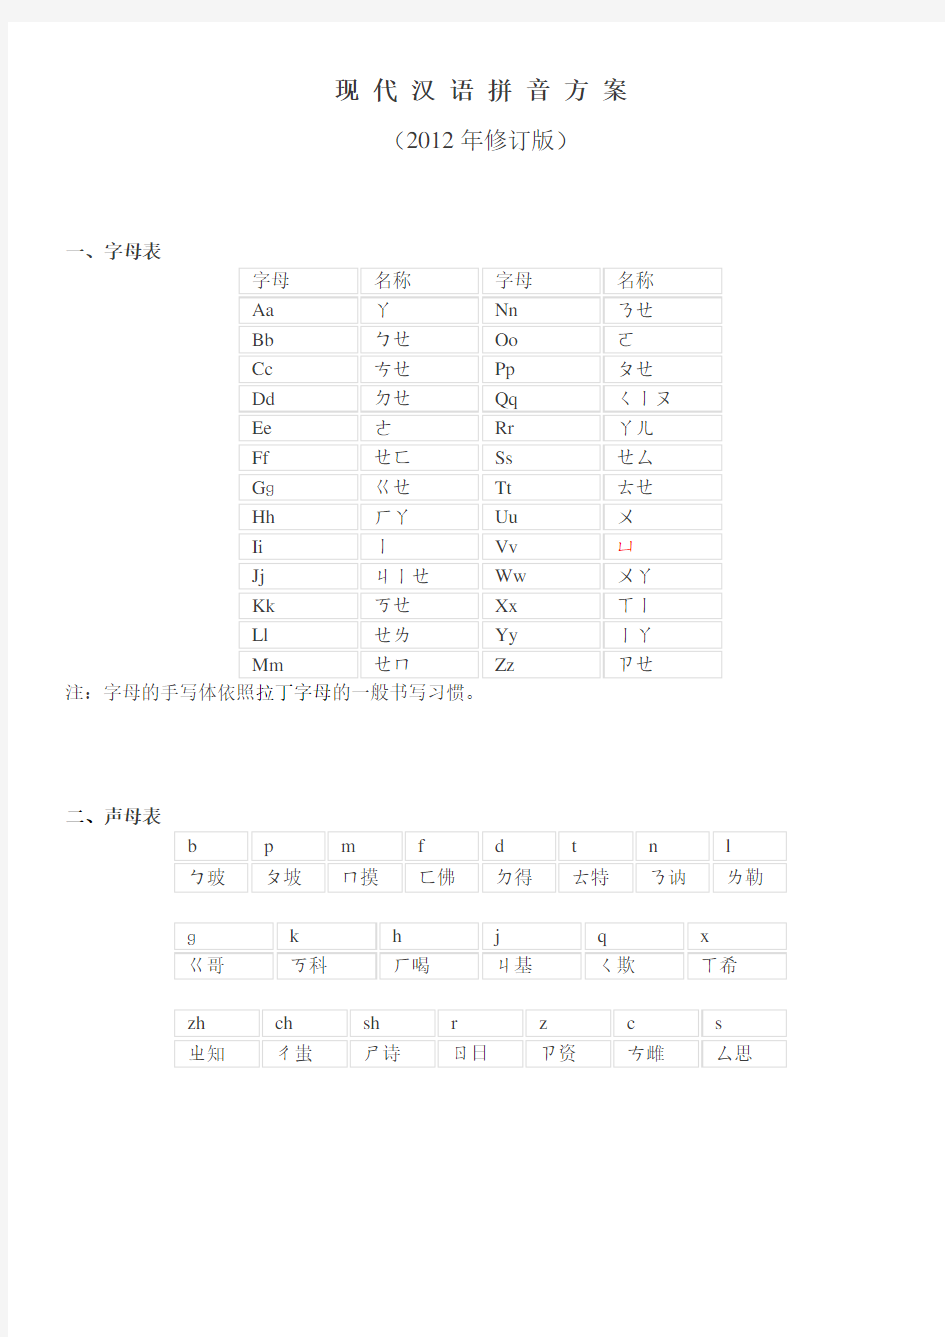 现代汉语拼音方案 (1)